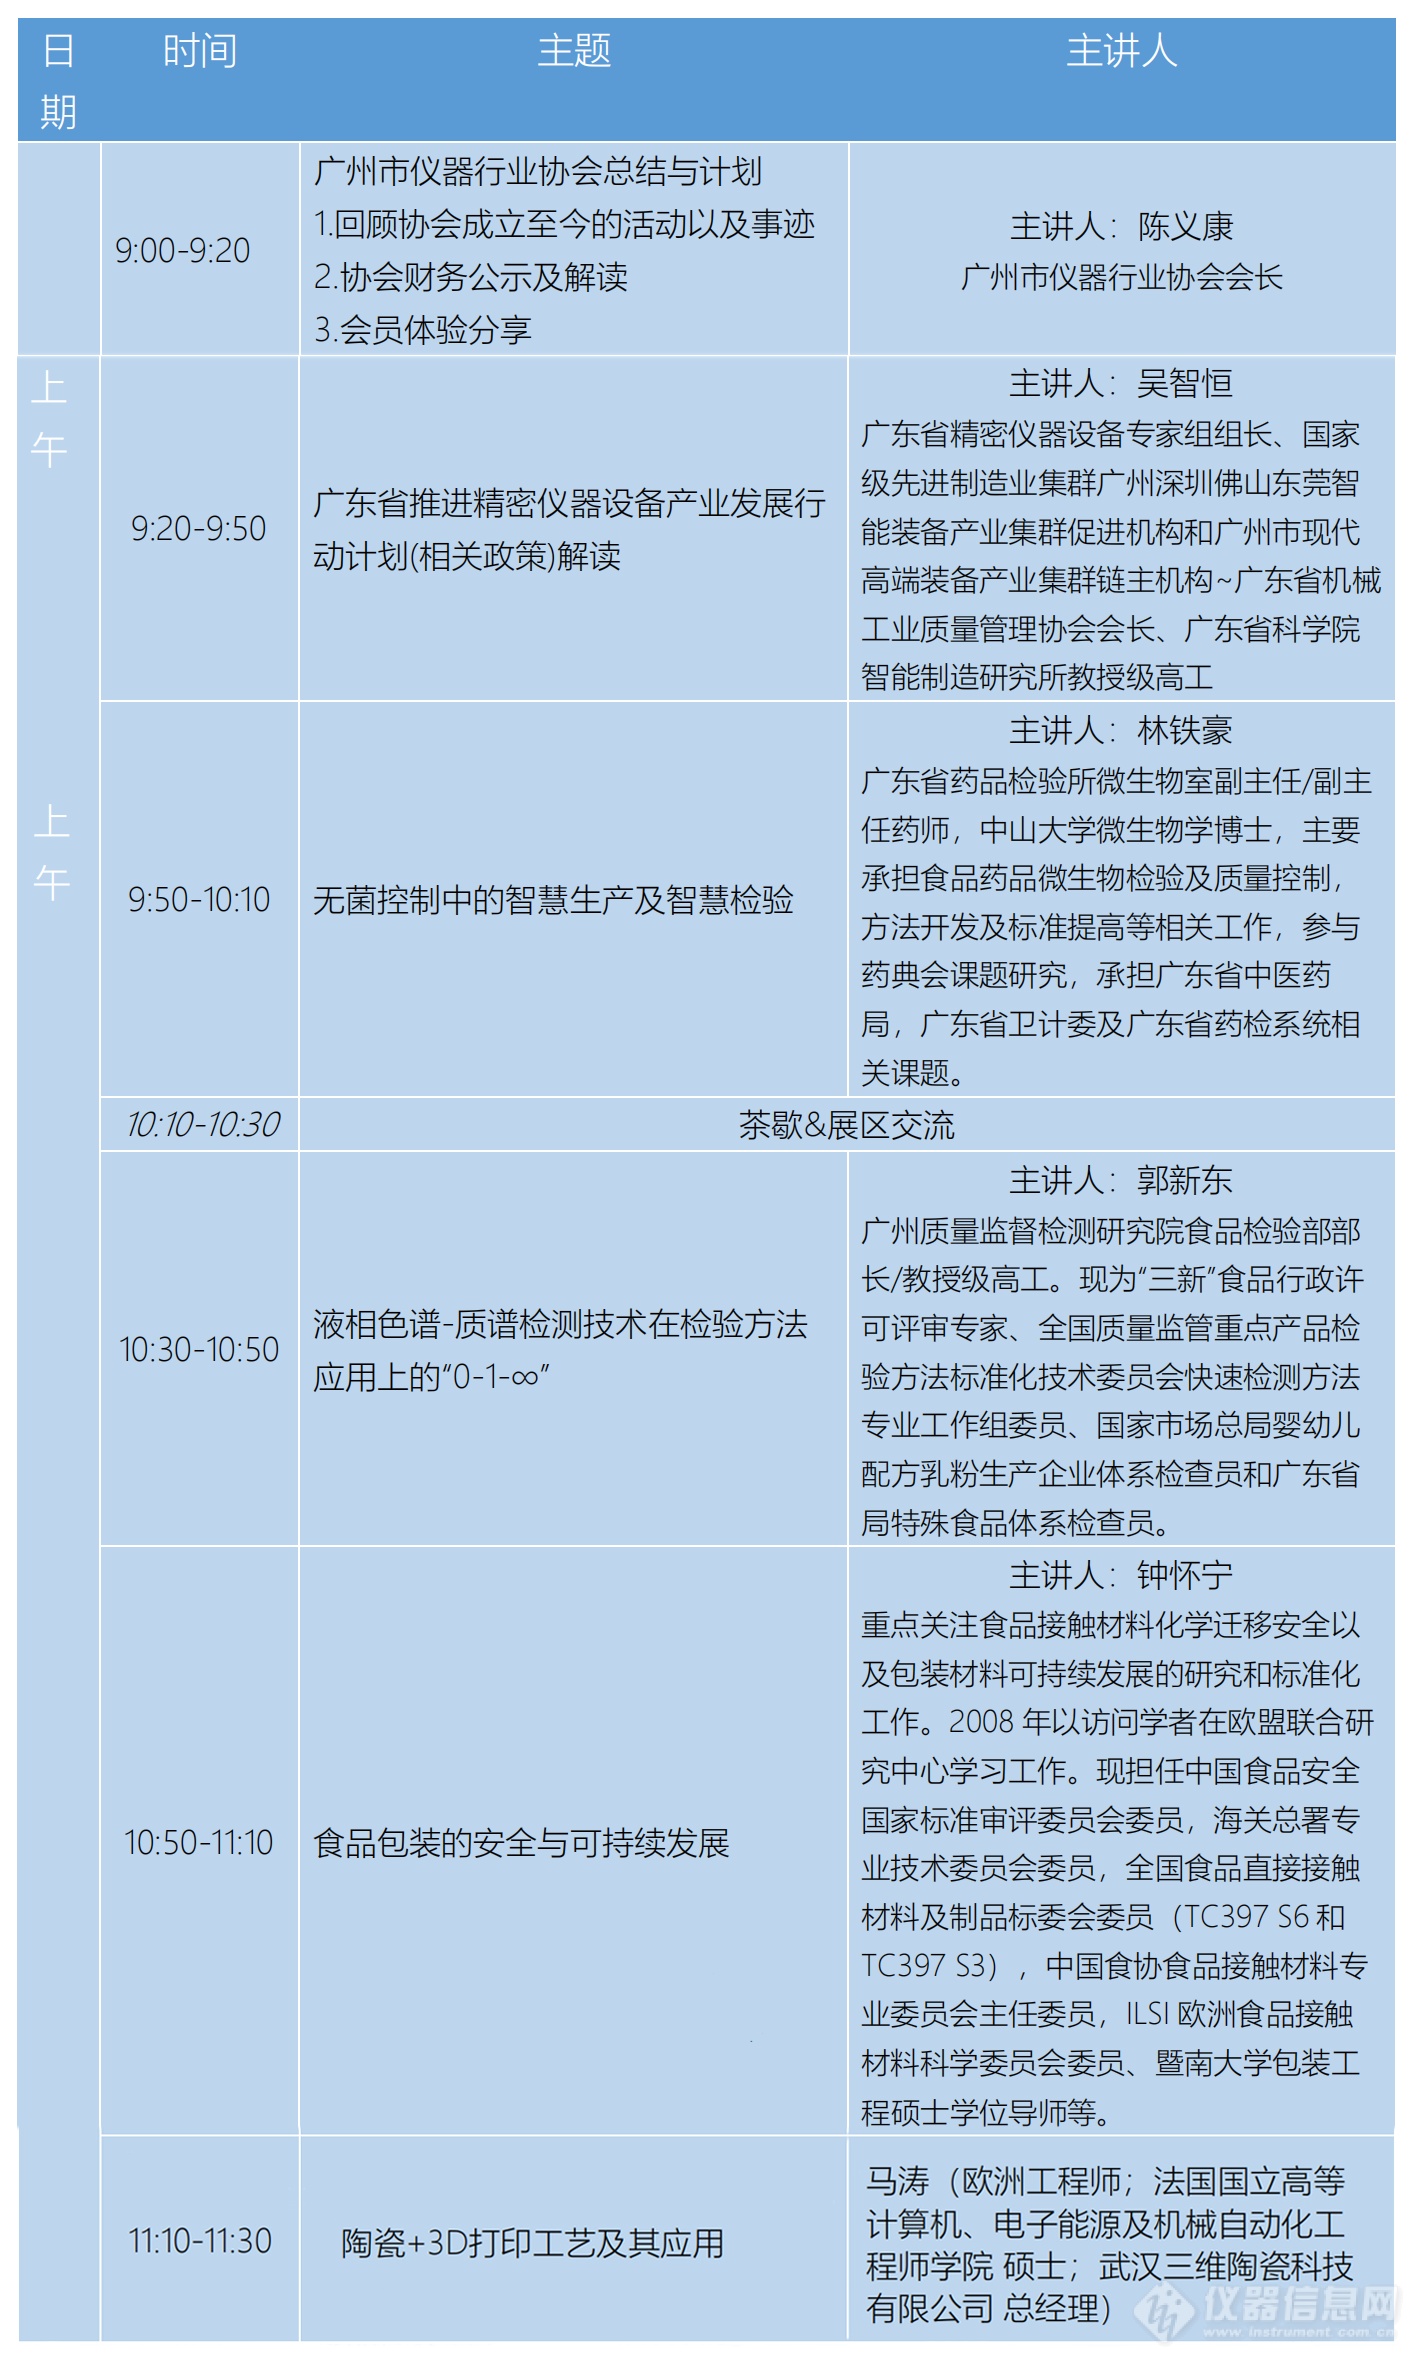 5.0[大会介绍]广州市仪器行业协会年会暨推动科学产业发展创新大会(1)_00.png